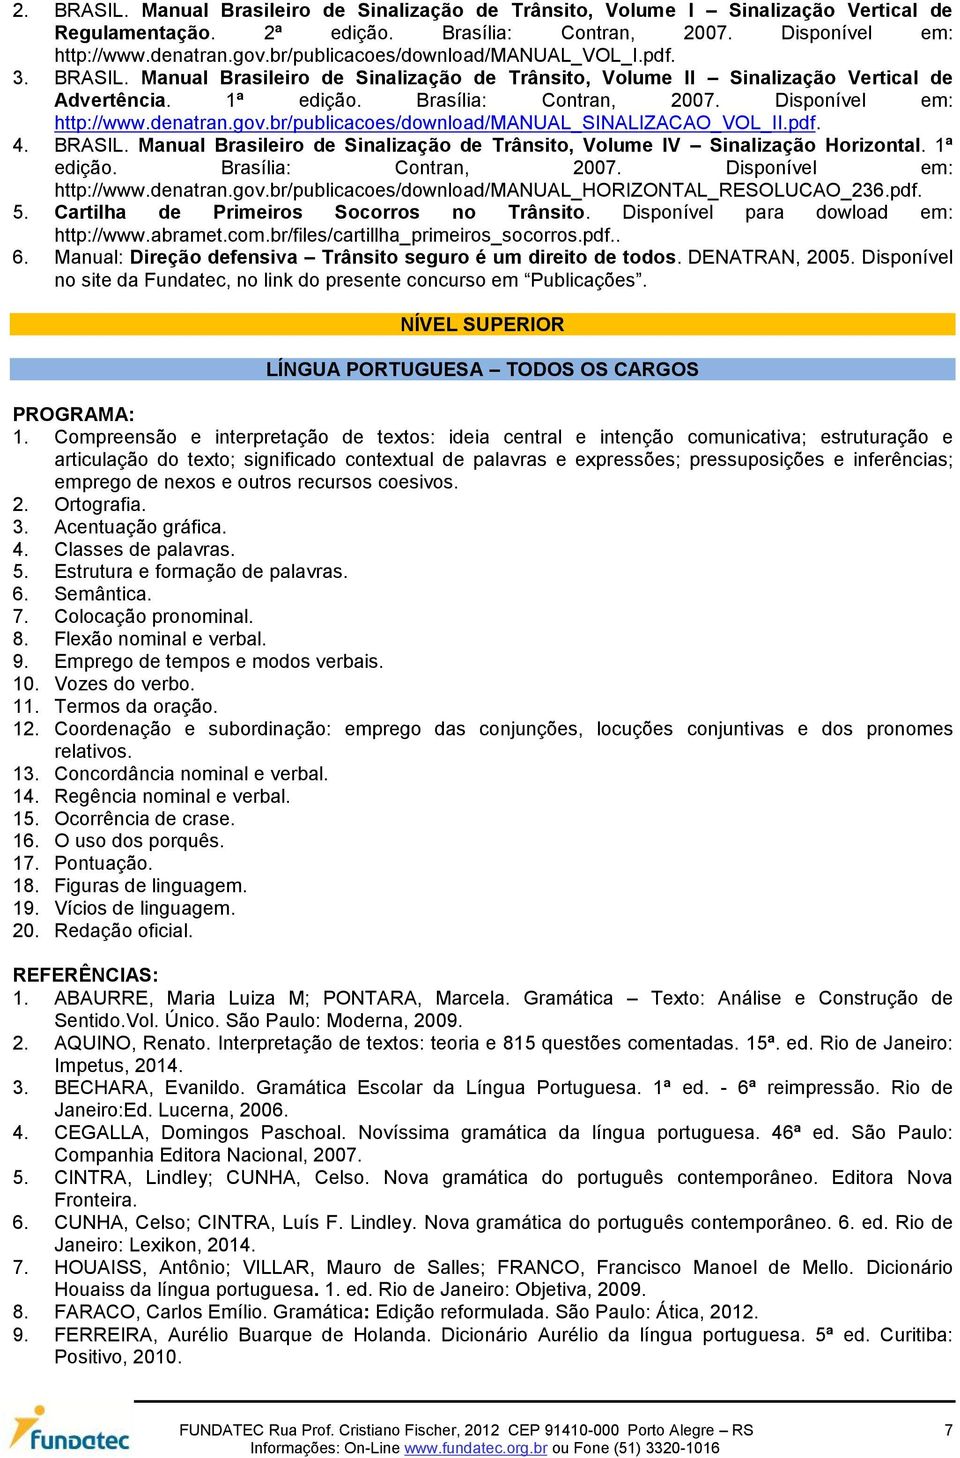 Disponível em: http://www.denatran.gov.br/publicacoes/download/manual_sinalizacao_vol_ii.pdf. 4. BRASIL. Manual Brasileiro de Sinalização de Trânsito, Volume IV Sinalização Horizontal. 1ª edição.